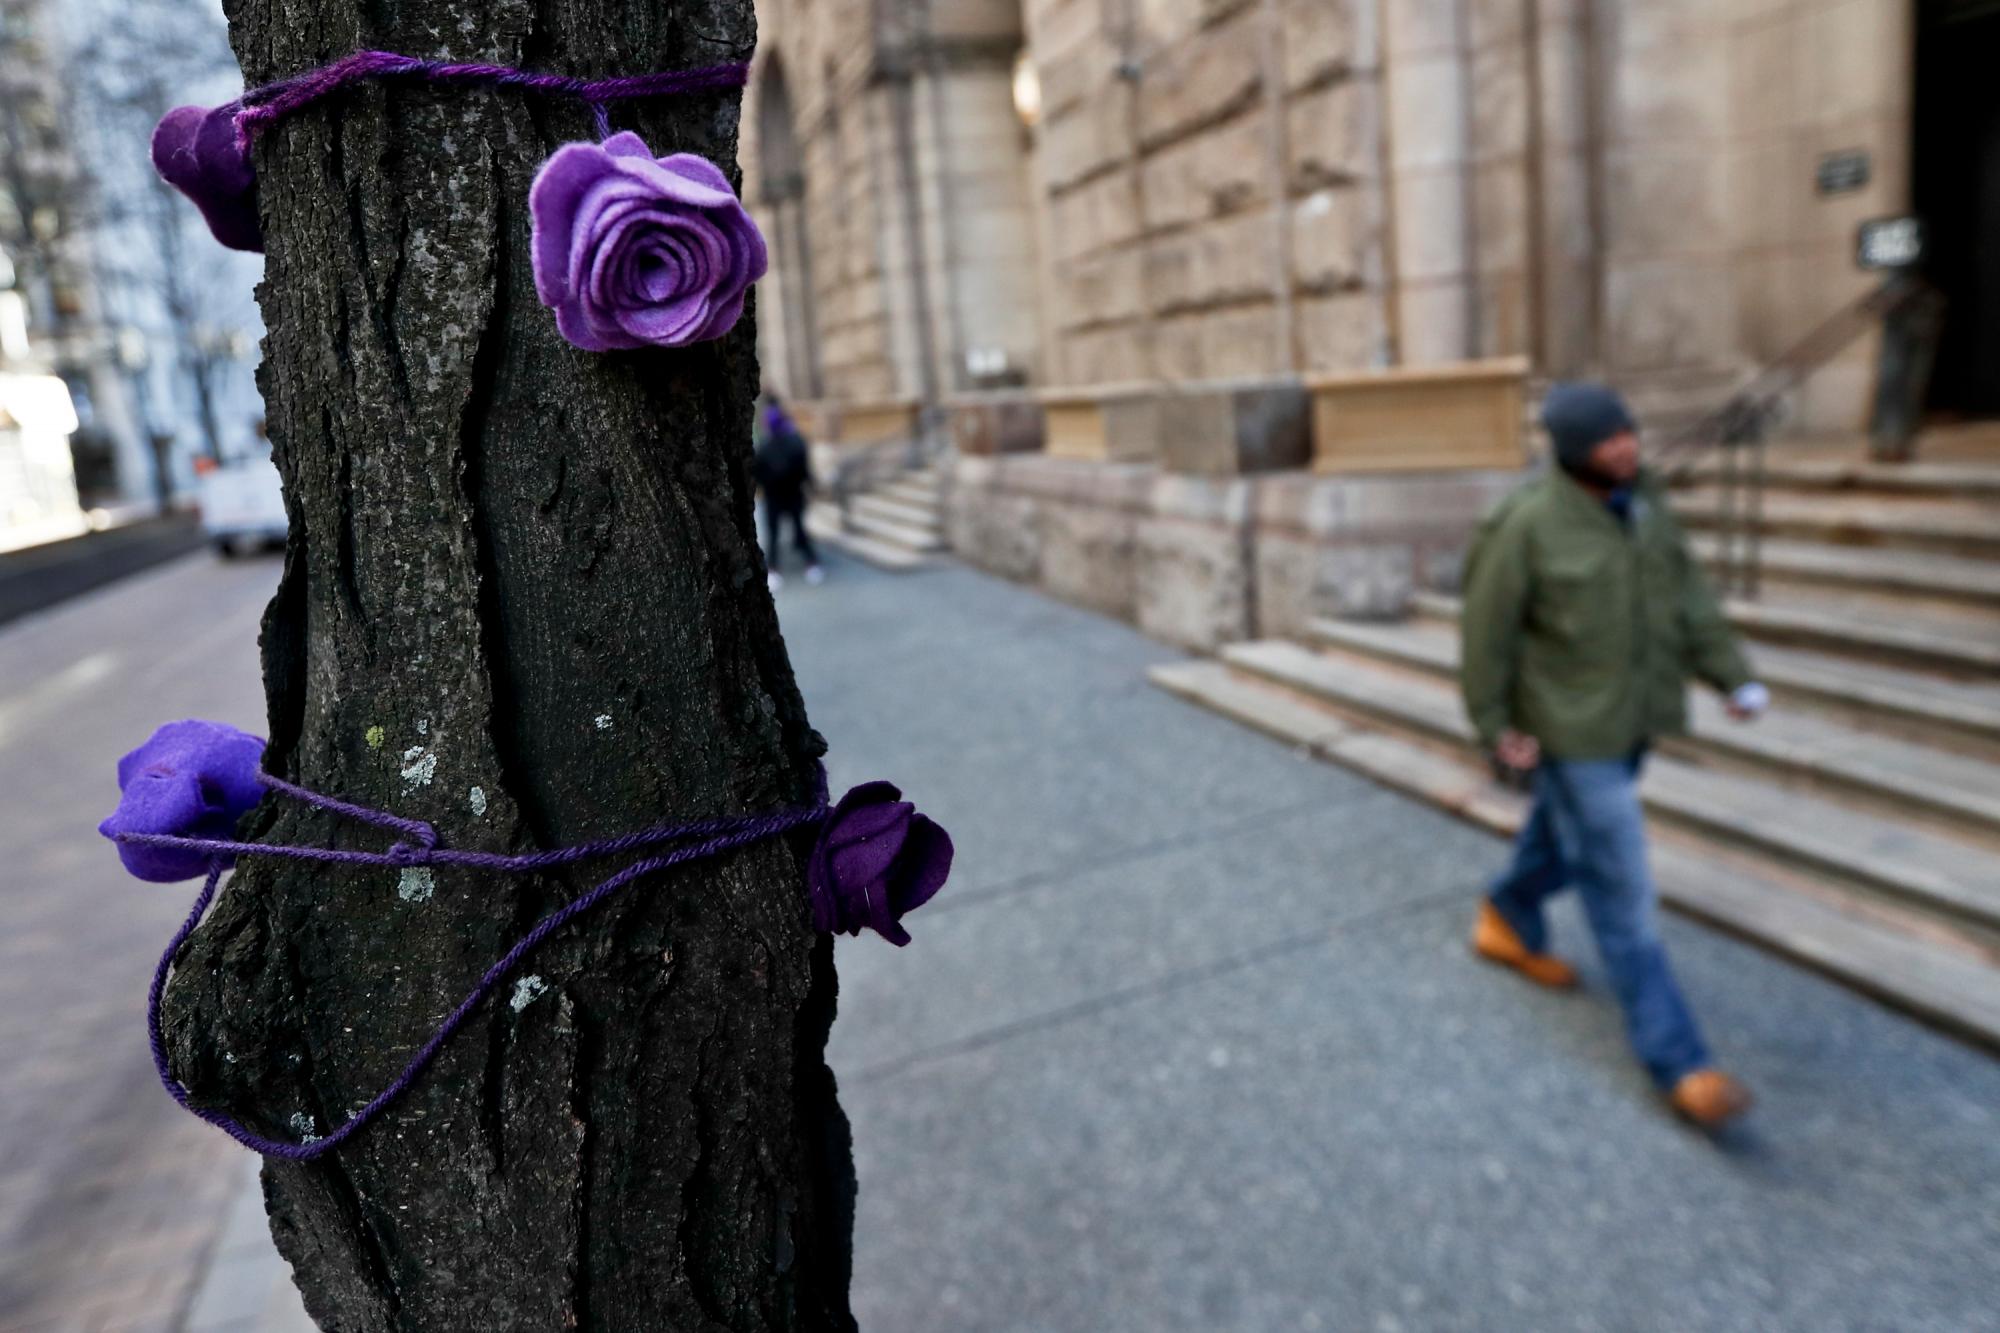 Las rosas de tela púrpura adornan los árboles a lo largo de Grant St., mientras la gente camina frente al Palacio de Justicia del Condado de Allegheny el primer día del juicio para Michael Rosfeld, un ex oficial de policía en East Pittsburgh, PA., el martes 19 de marzo de 2019 en Pittsburgh.